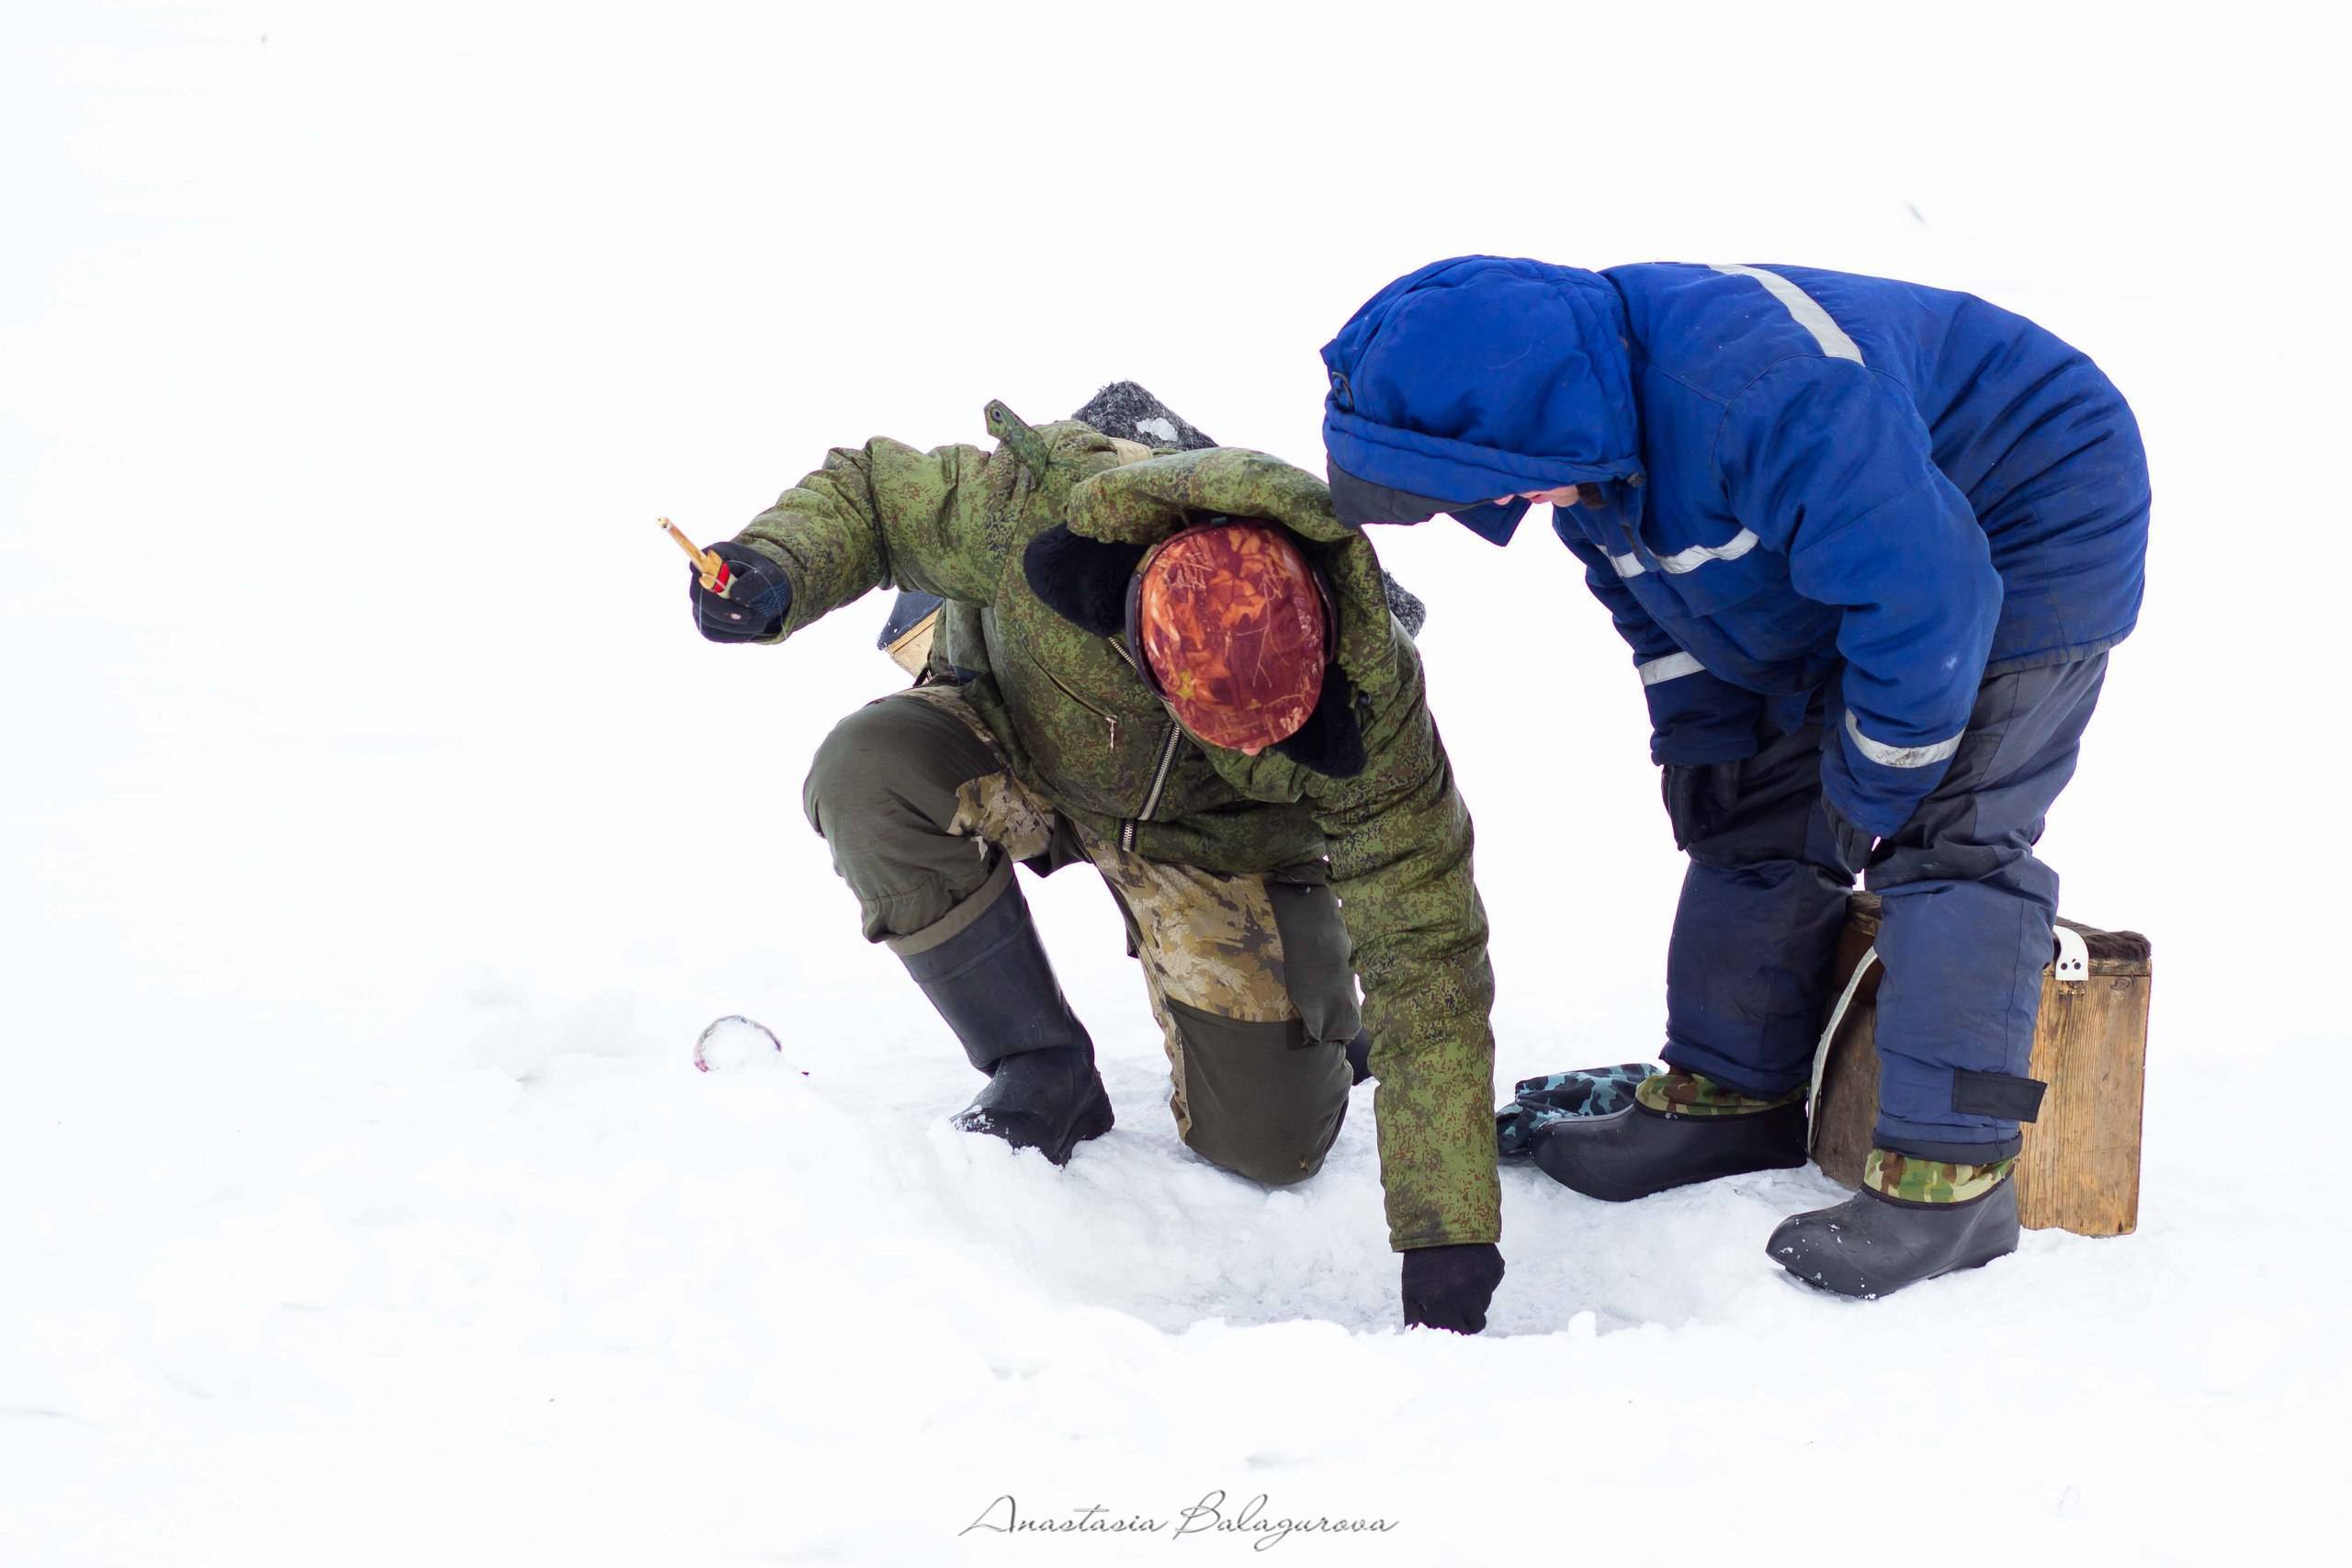 Ловля леща зимой на разные снасти и поиск рыбы со льда
ловля леща зимой на разные снасти и поиск рыбы со льда